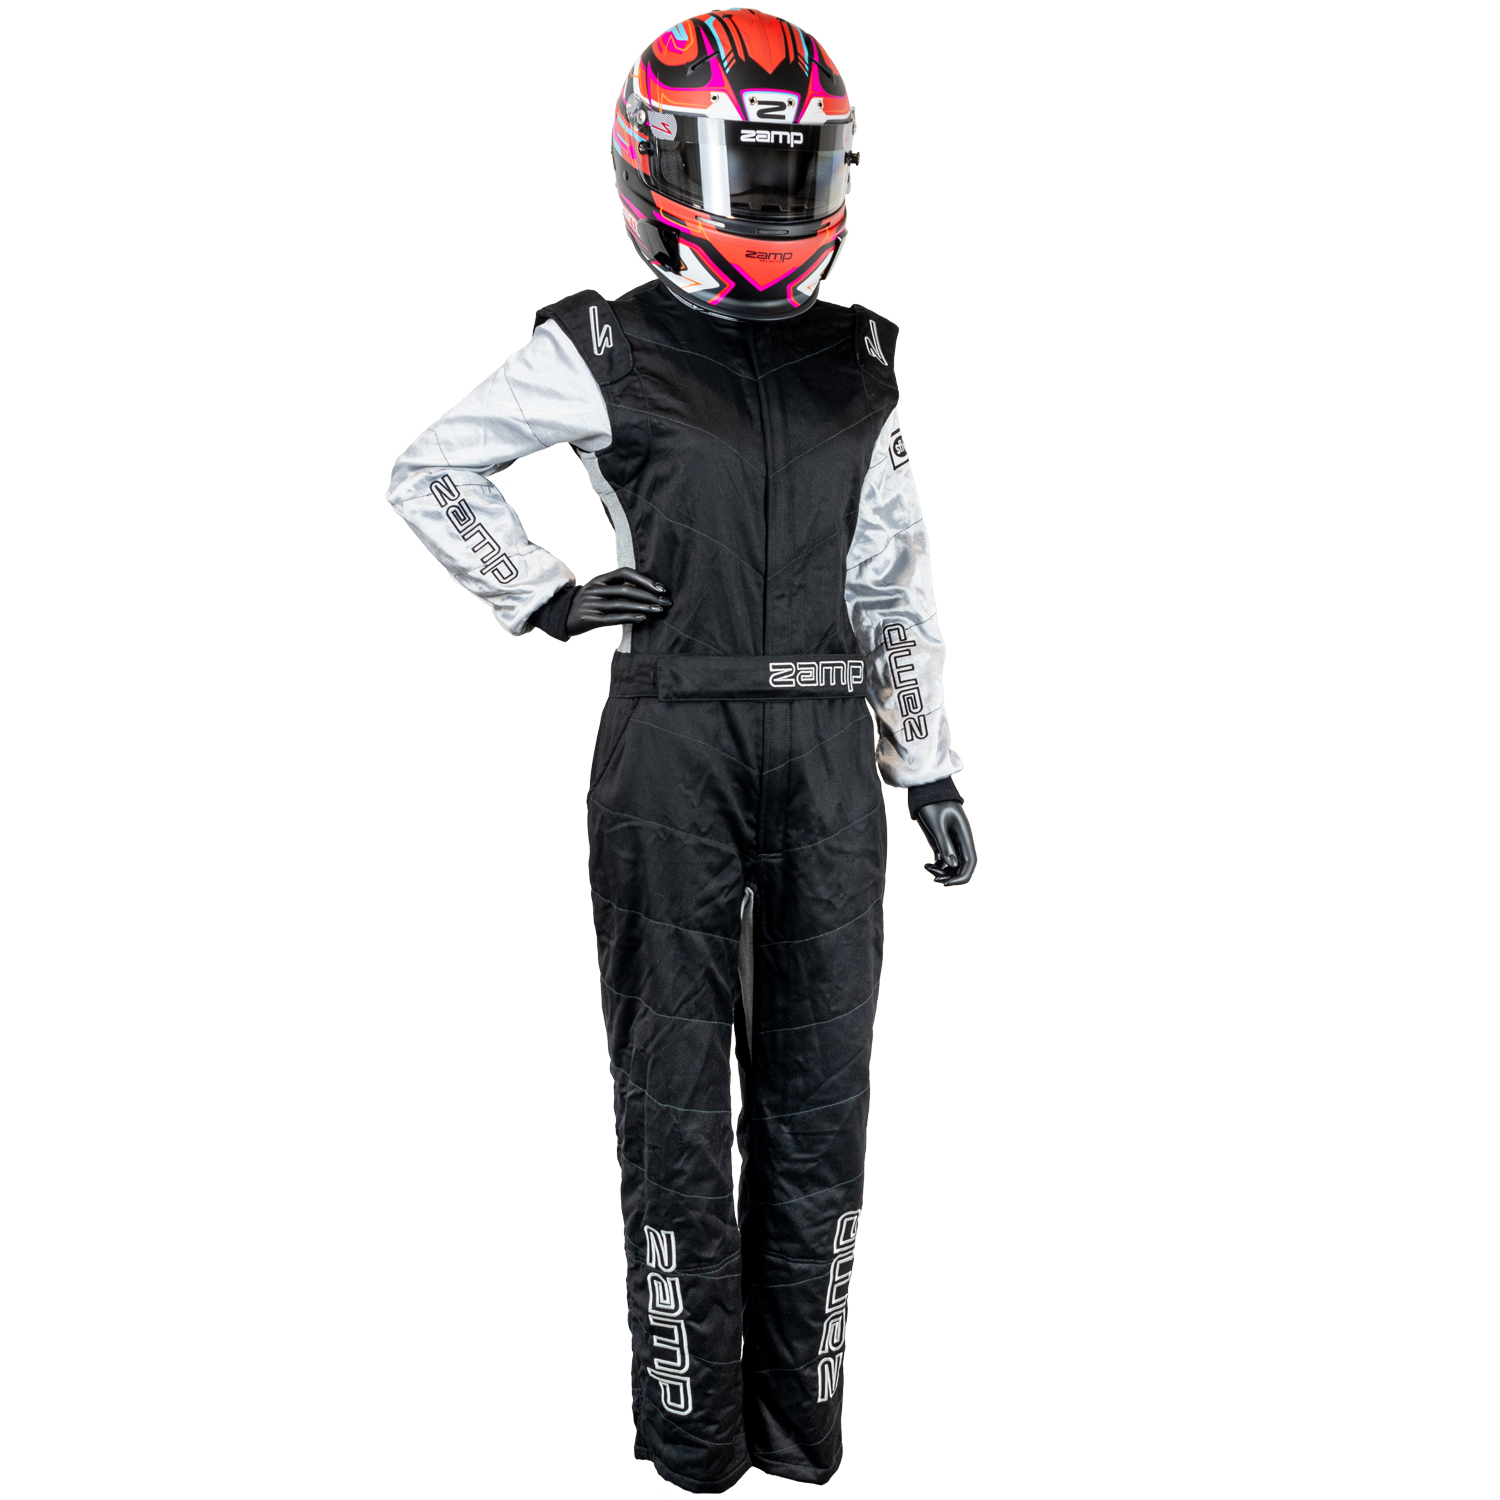 ZR-40 Race Suit